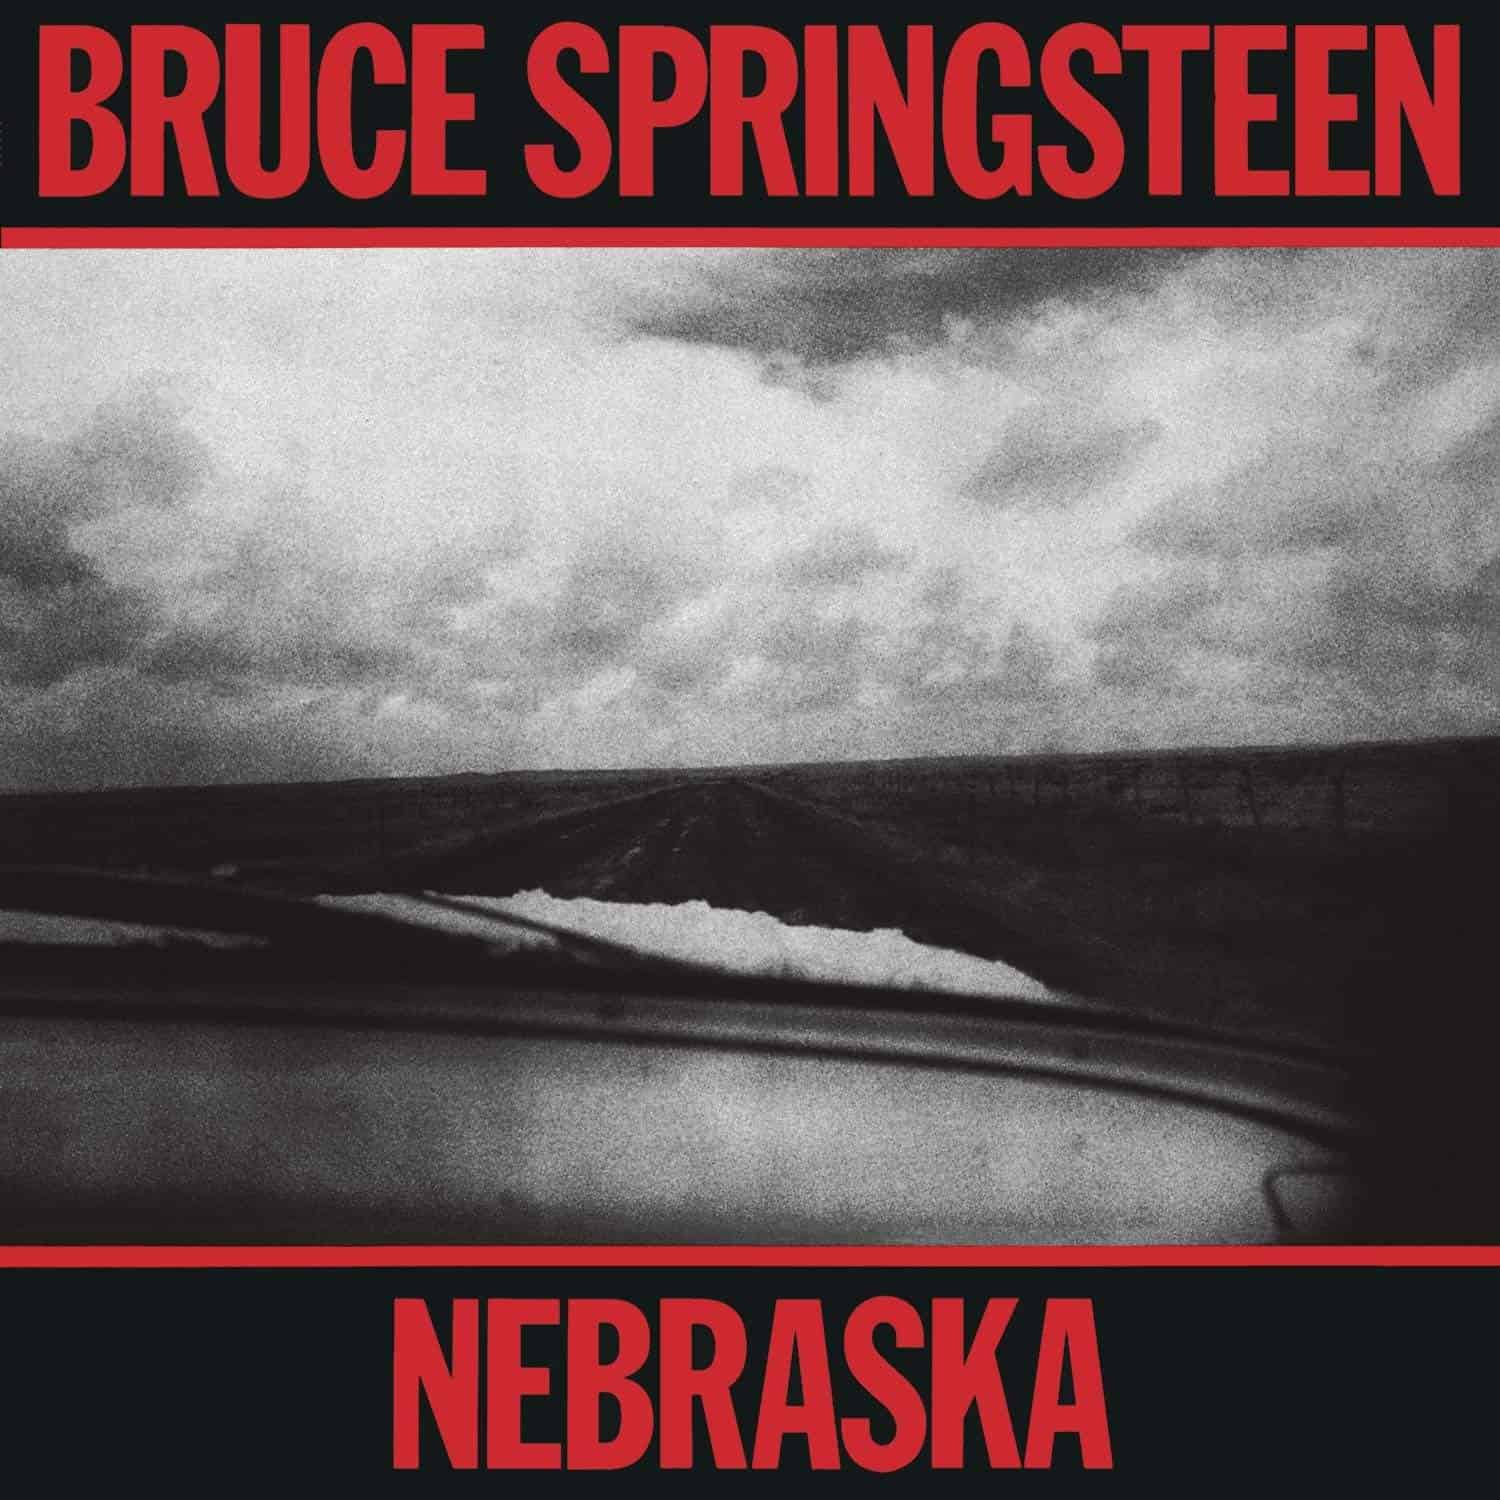 BRUCE SPRINGSTEEN - NEBRASKA - VINYL LP - Wah Wah Records